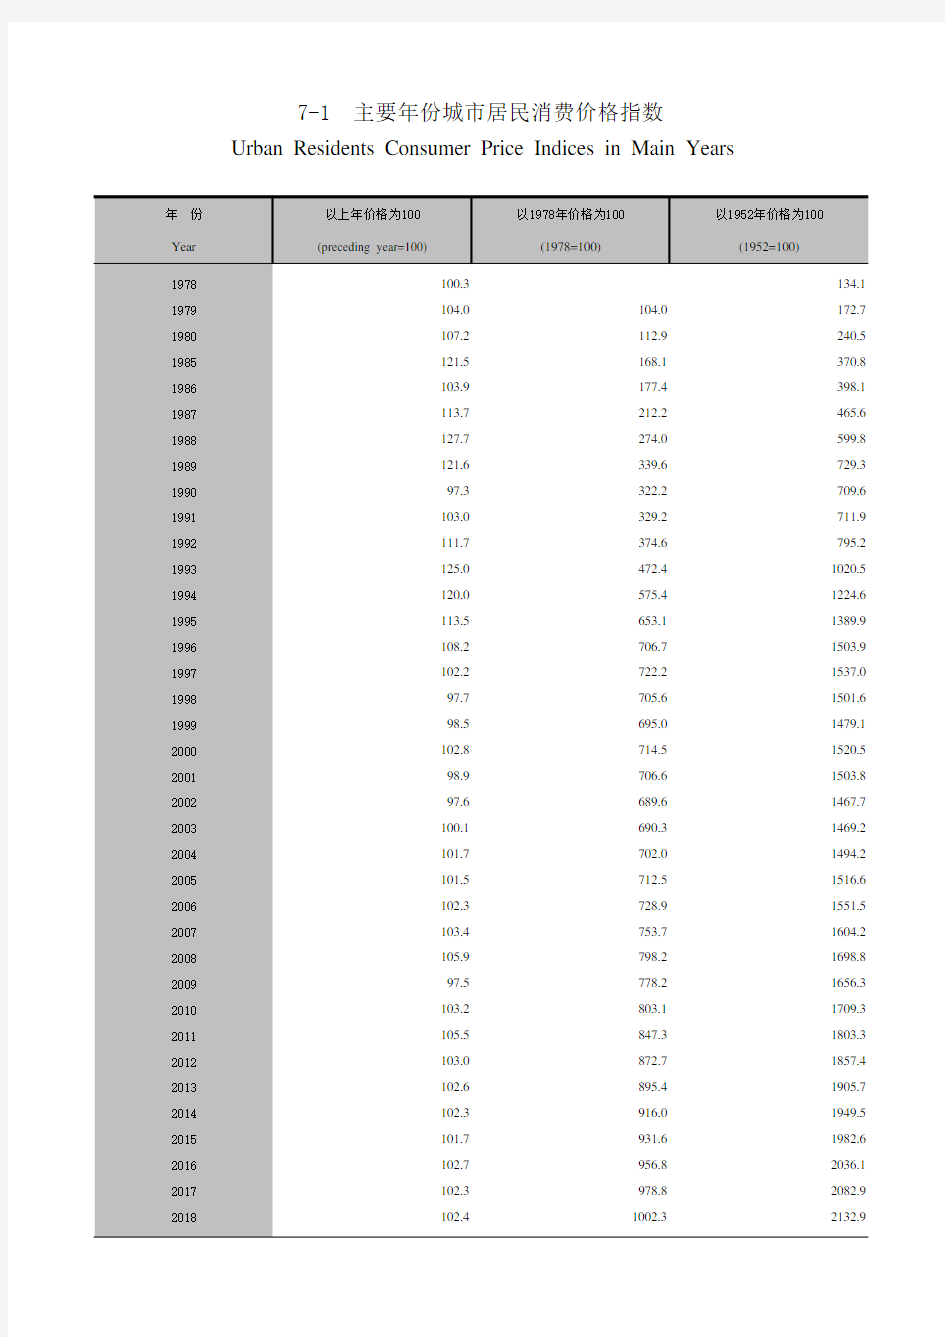 广州市社会经济发展指标统计年鉴数据：7-1主要年份城市居民消费价格指数